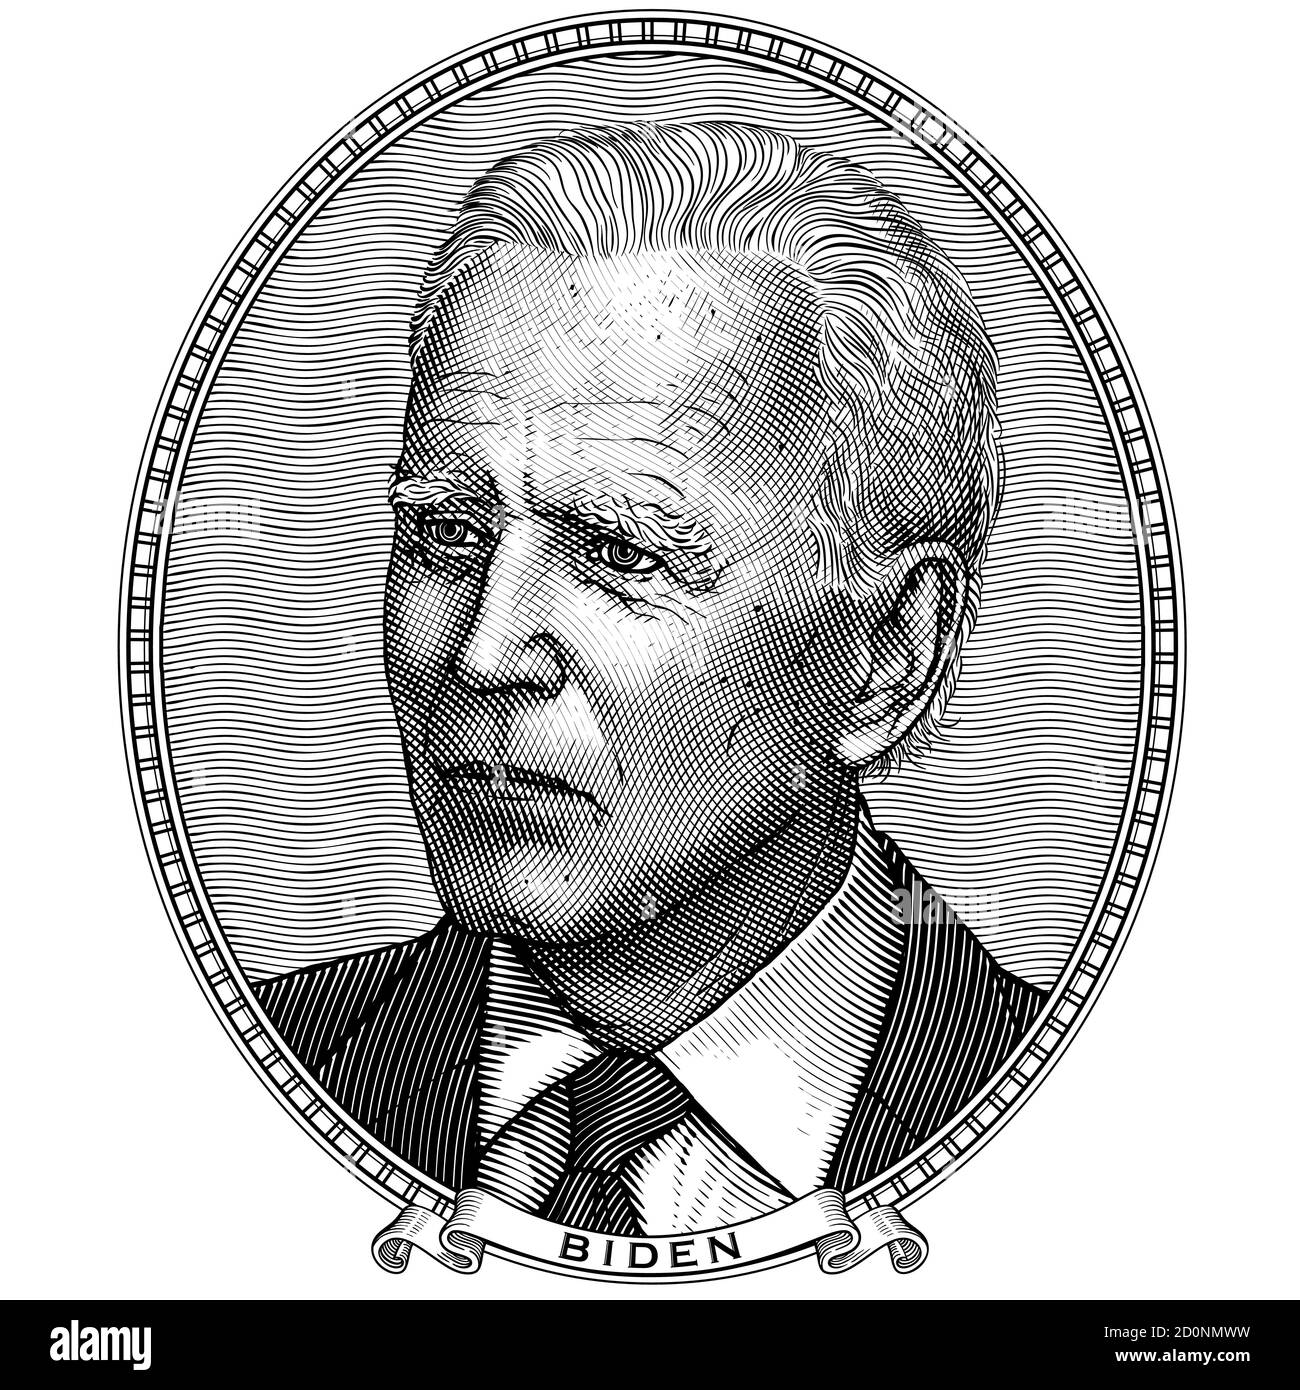 Joe Biden. Incisione vettoriale in stile vintage. Ritratto ovale del candidato presidenziale democratico per le elezioni negli Stati Uniti. Stampa e adesivo. Illustrazione Vettoriale